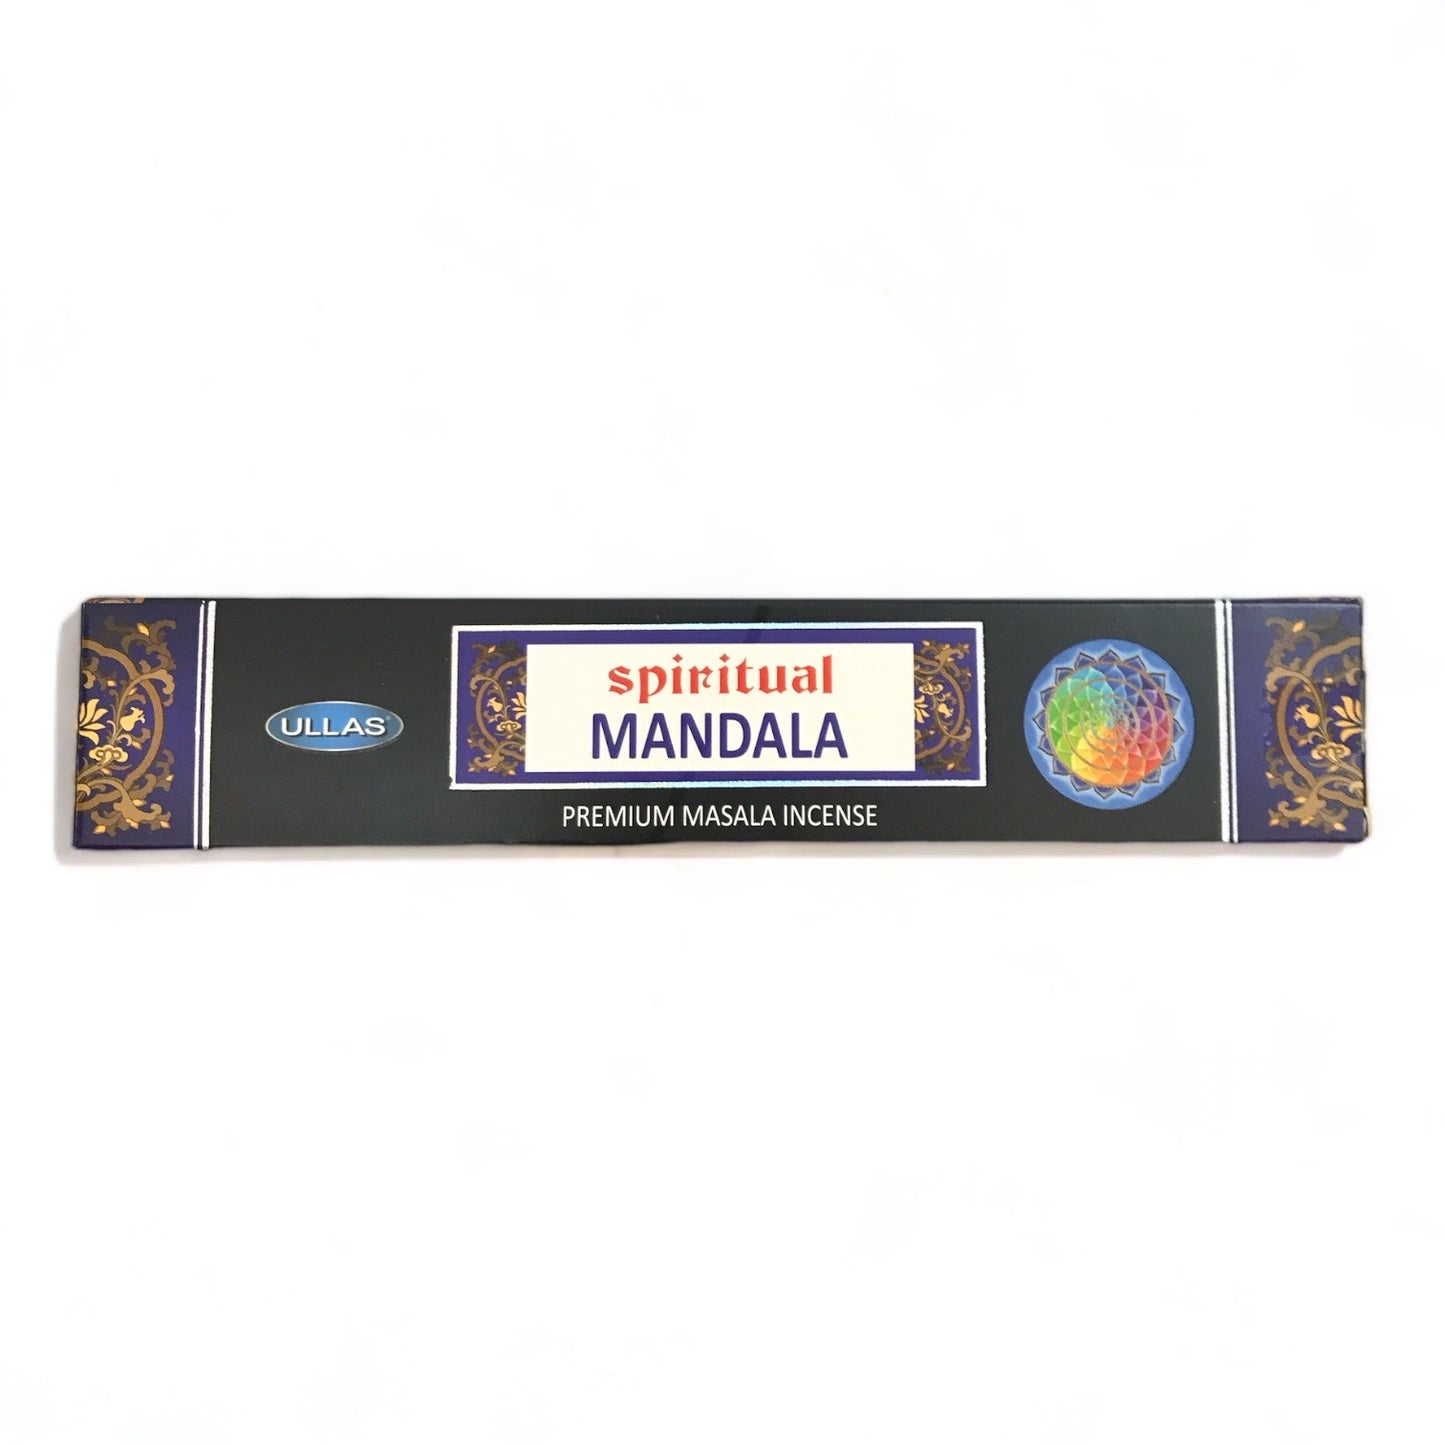 Spiritual Mandala Incense- Ullas- 15g